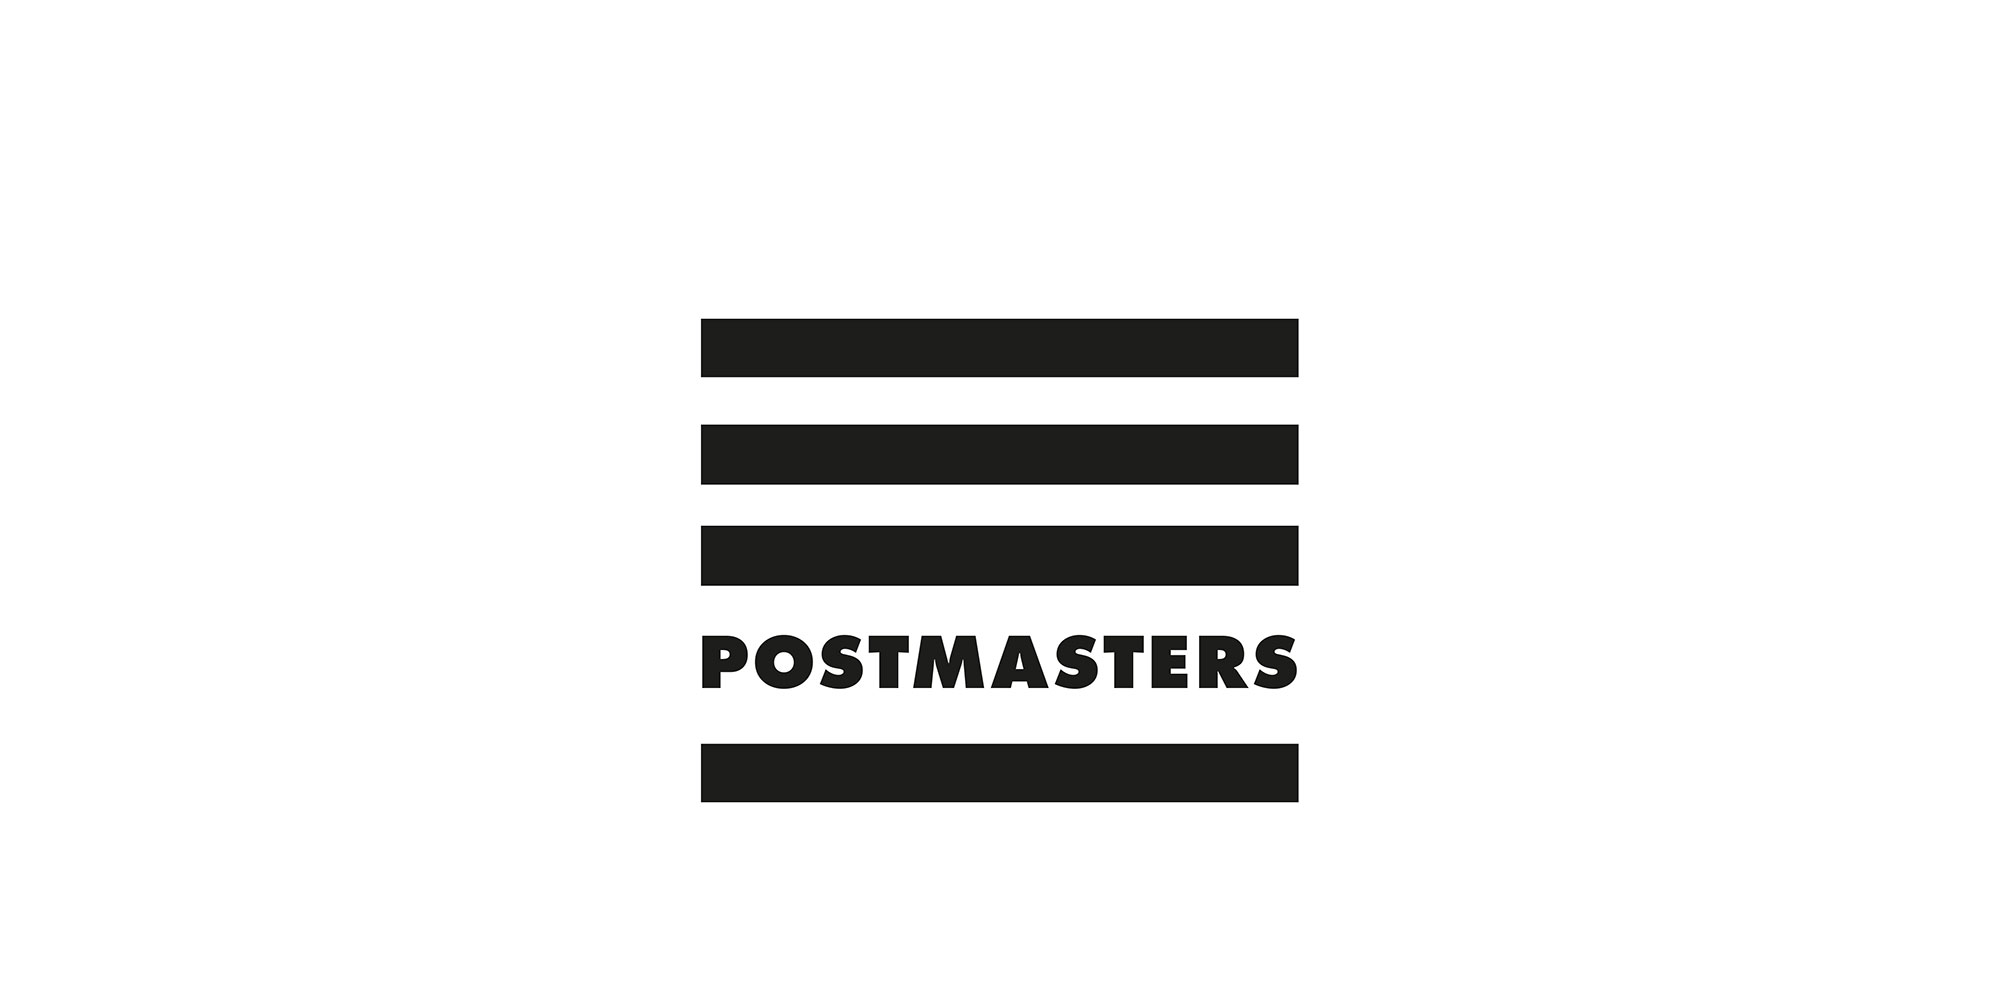 POSTMASTERS